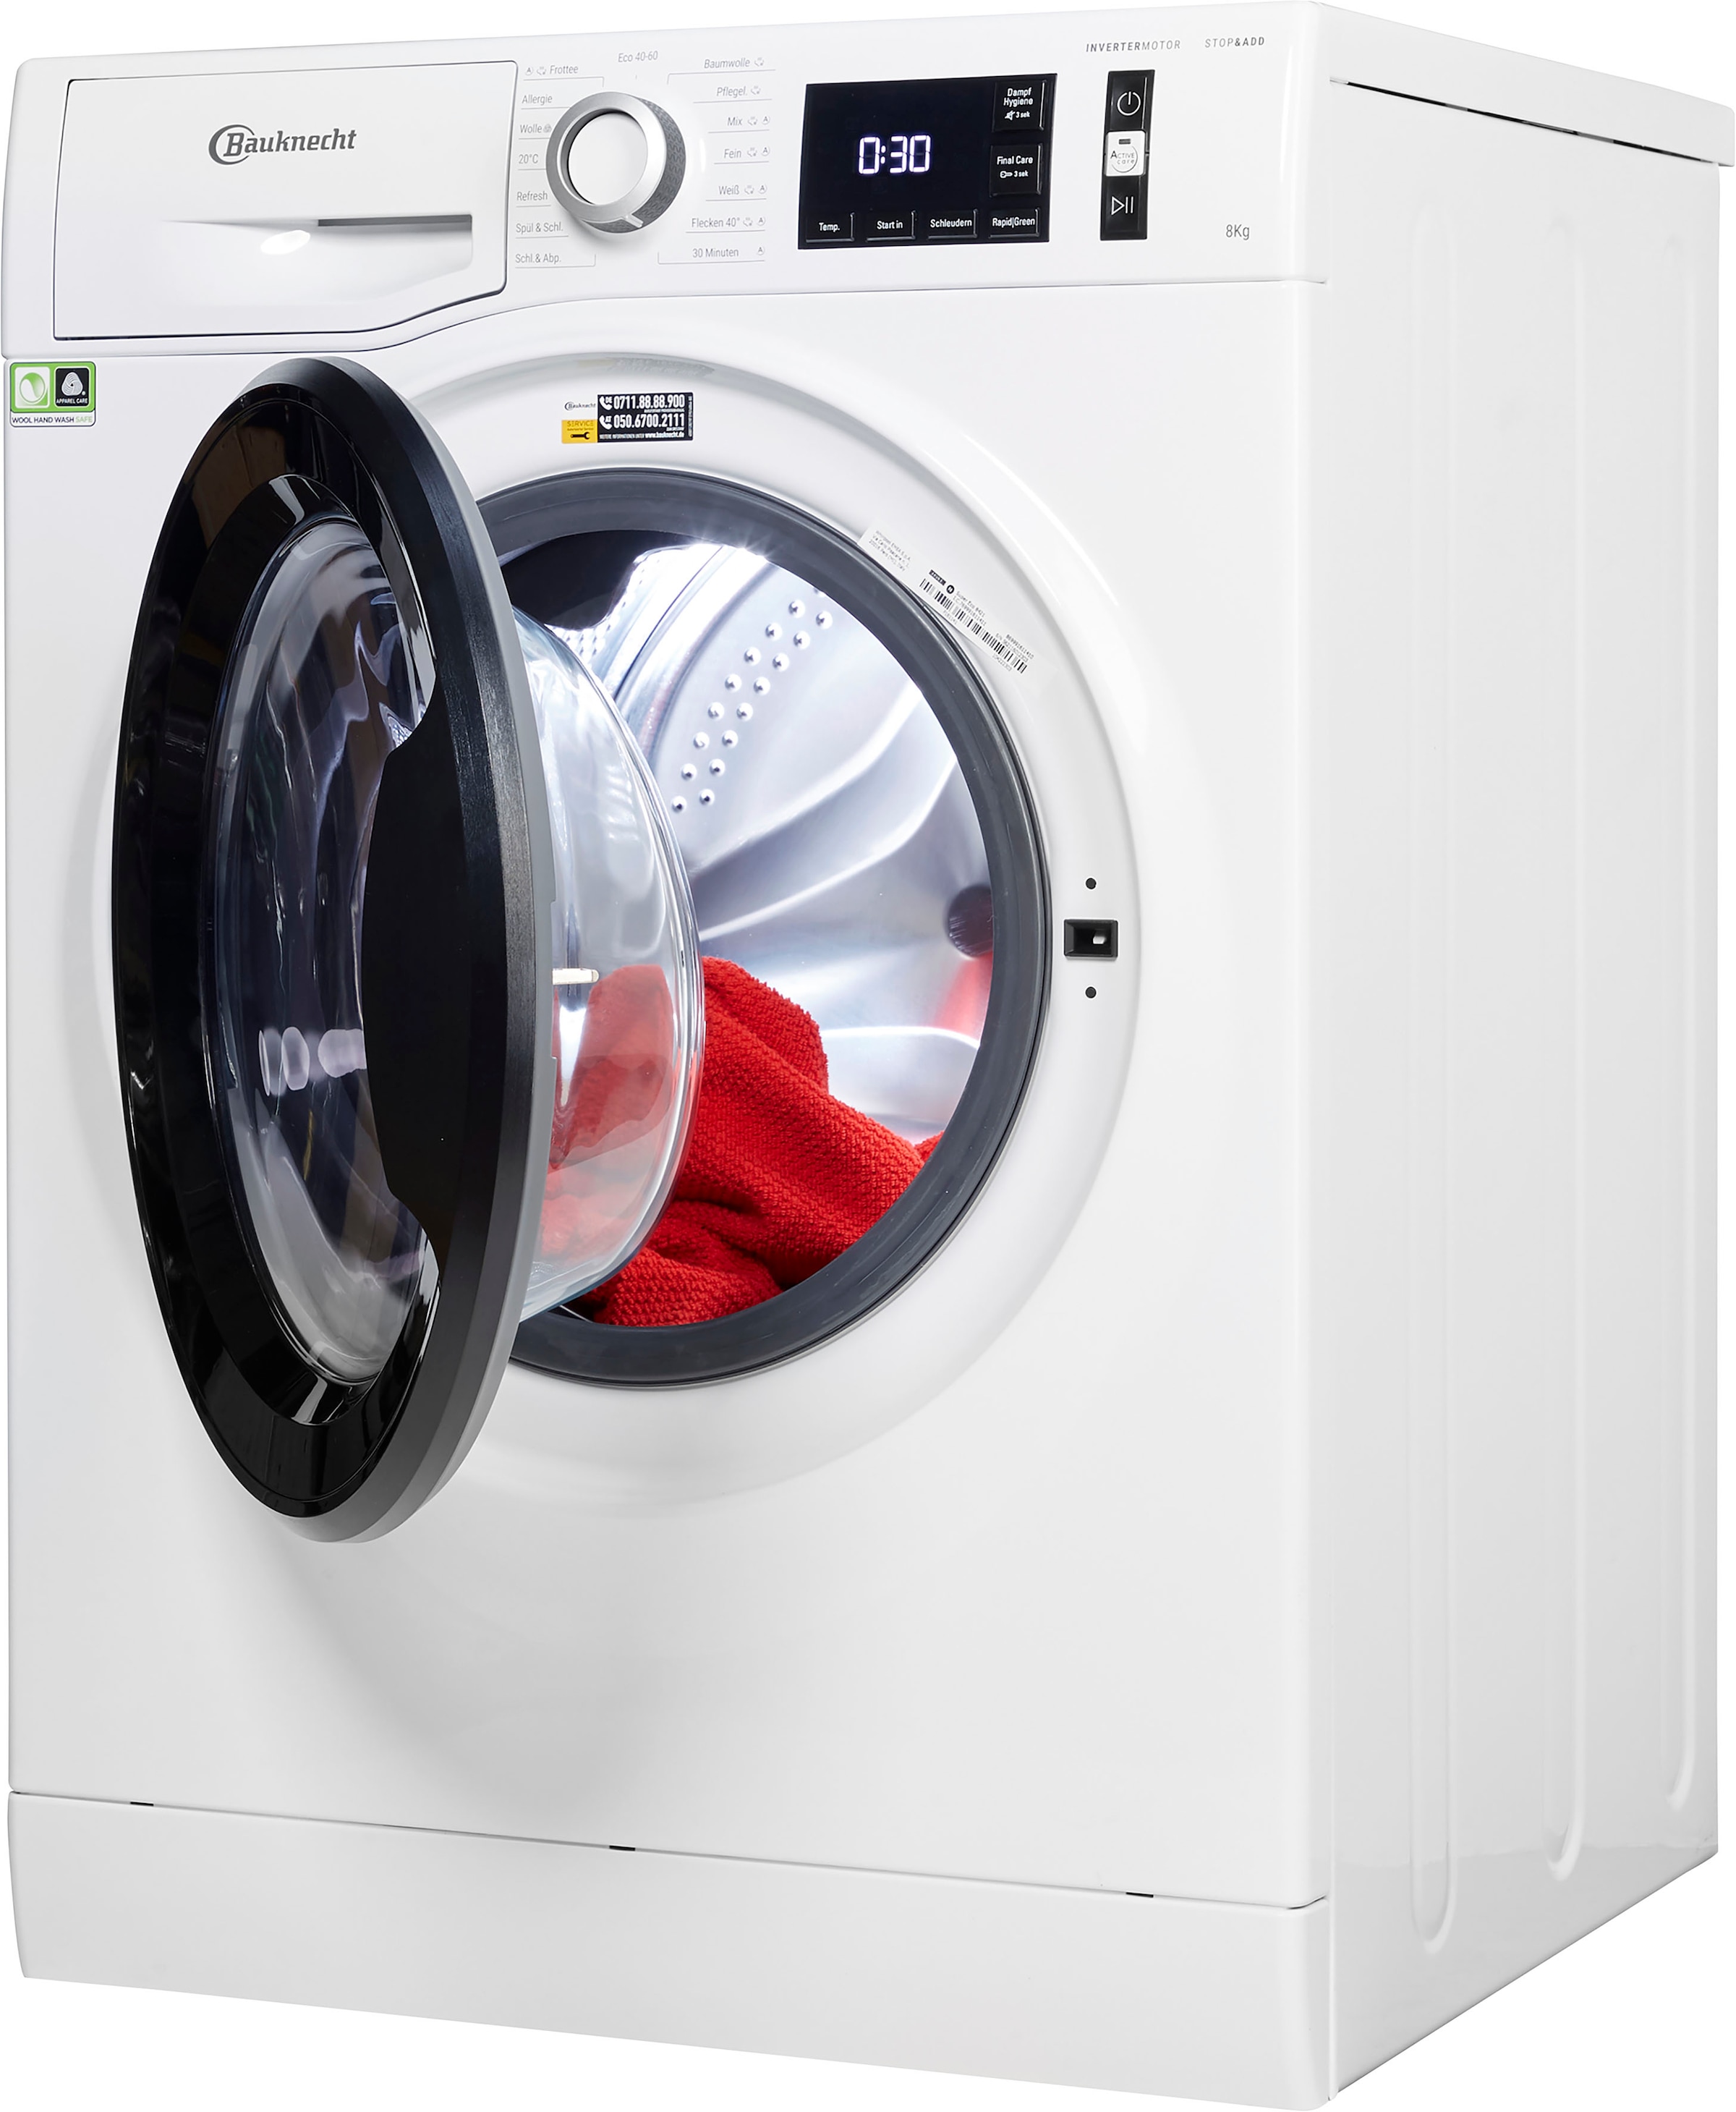 BAUKNECHT Waschmaschine »Super Eco 8421«, Super Eco 8421, 8 kg, 1400 U/min, 4  Jahre Herstellergarantie auf Rechnung kaufen